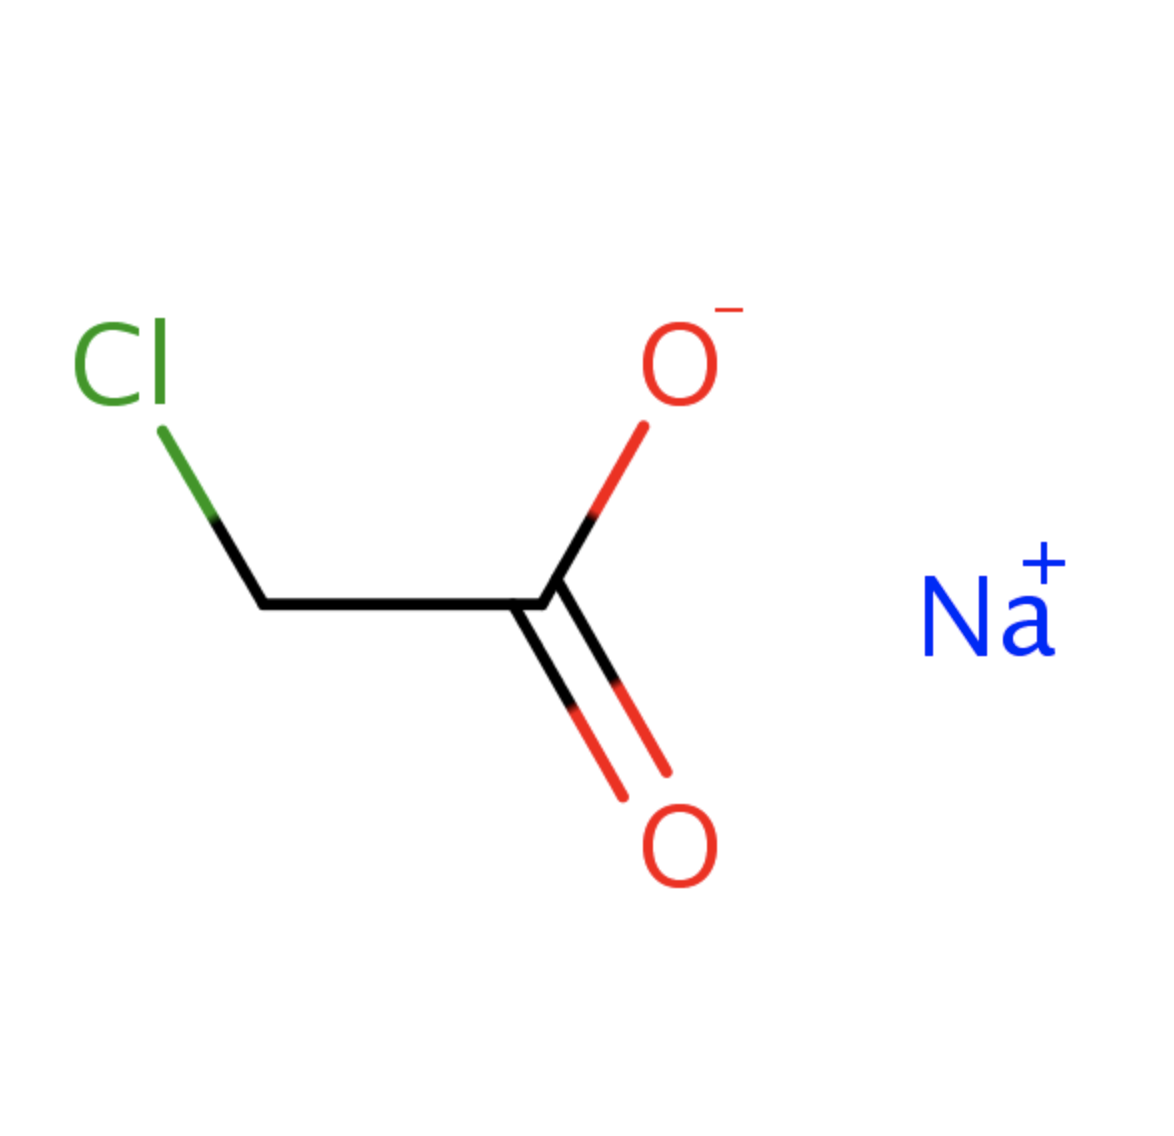  Natri cloroacetat là gì và các ứng dụng trong công nghiệp sản xuất